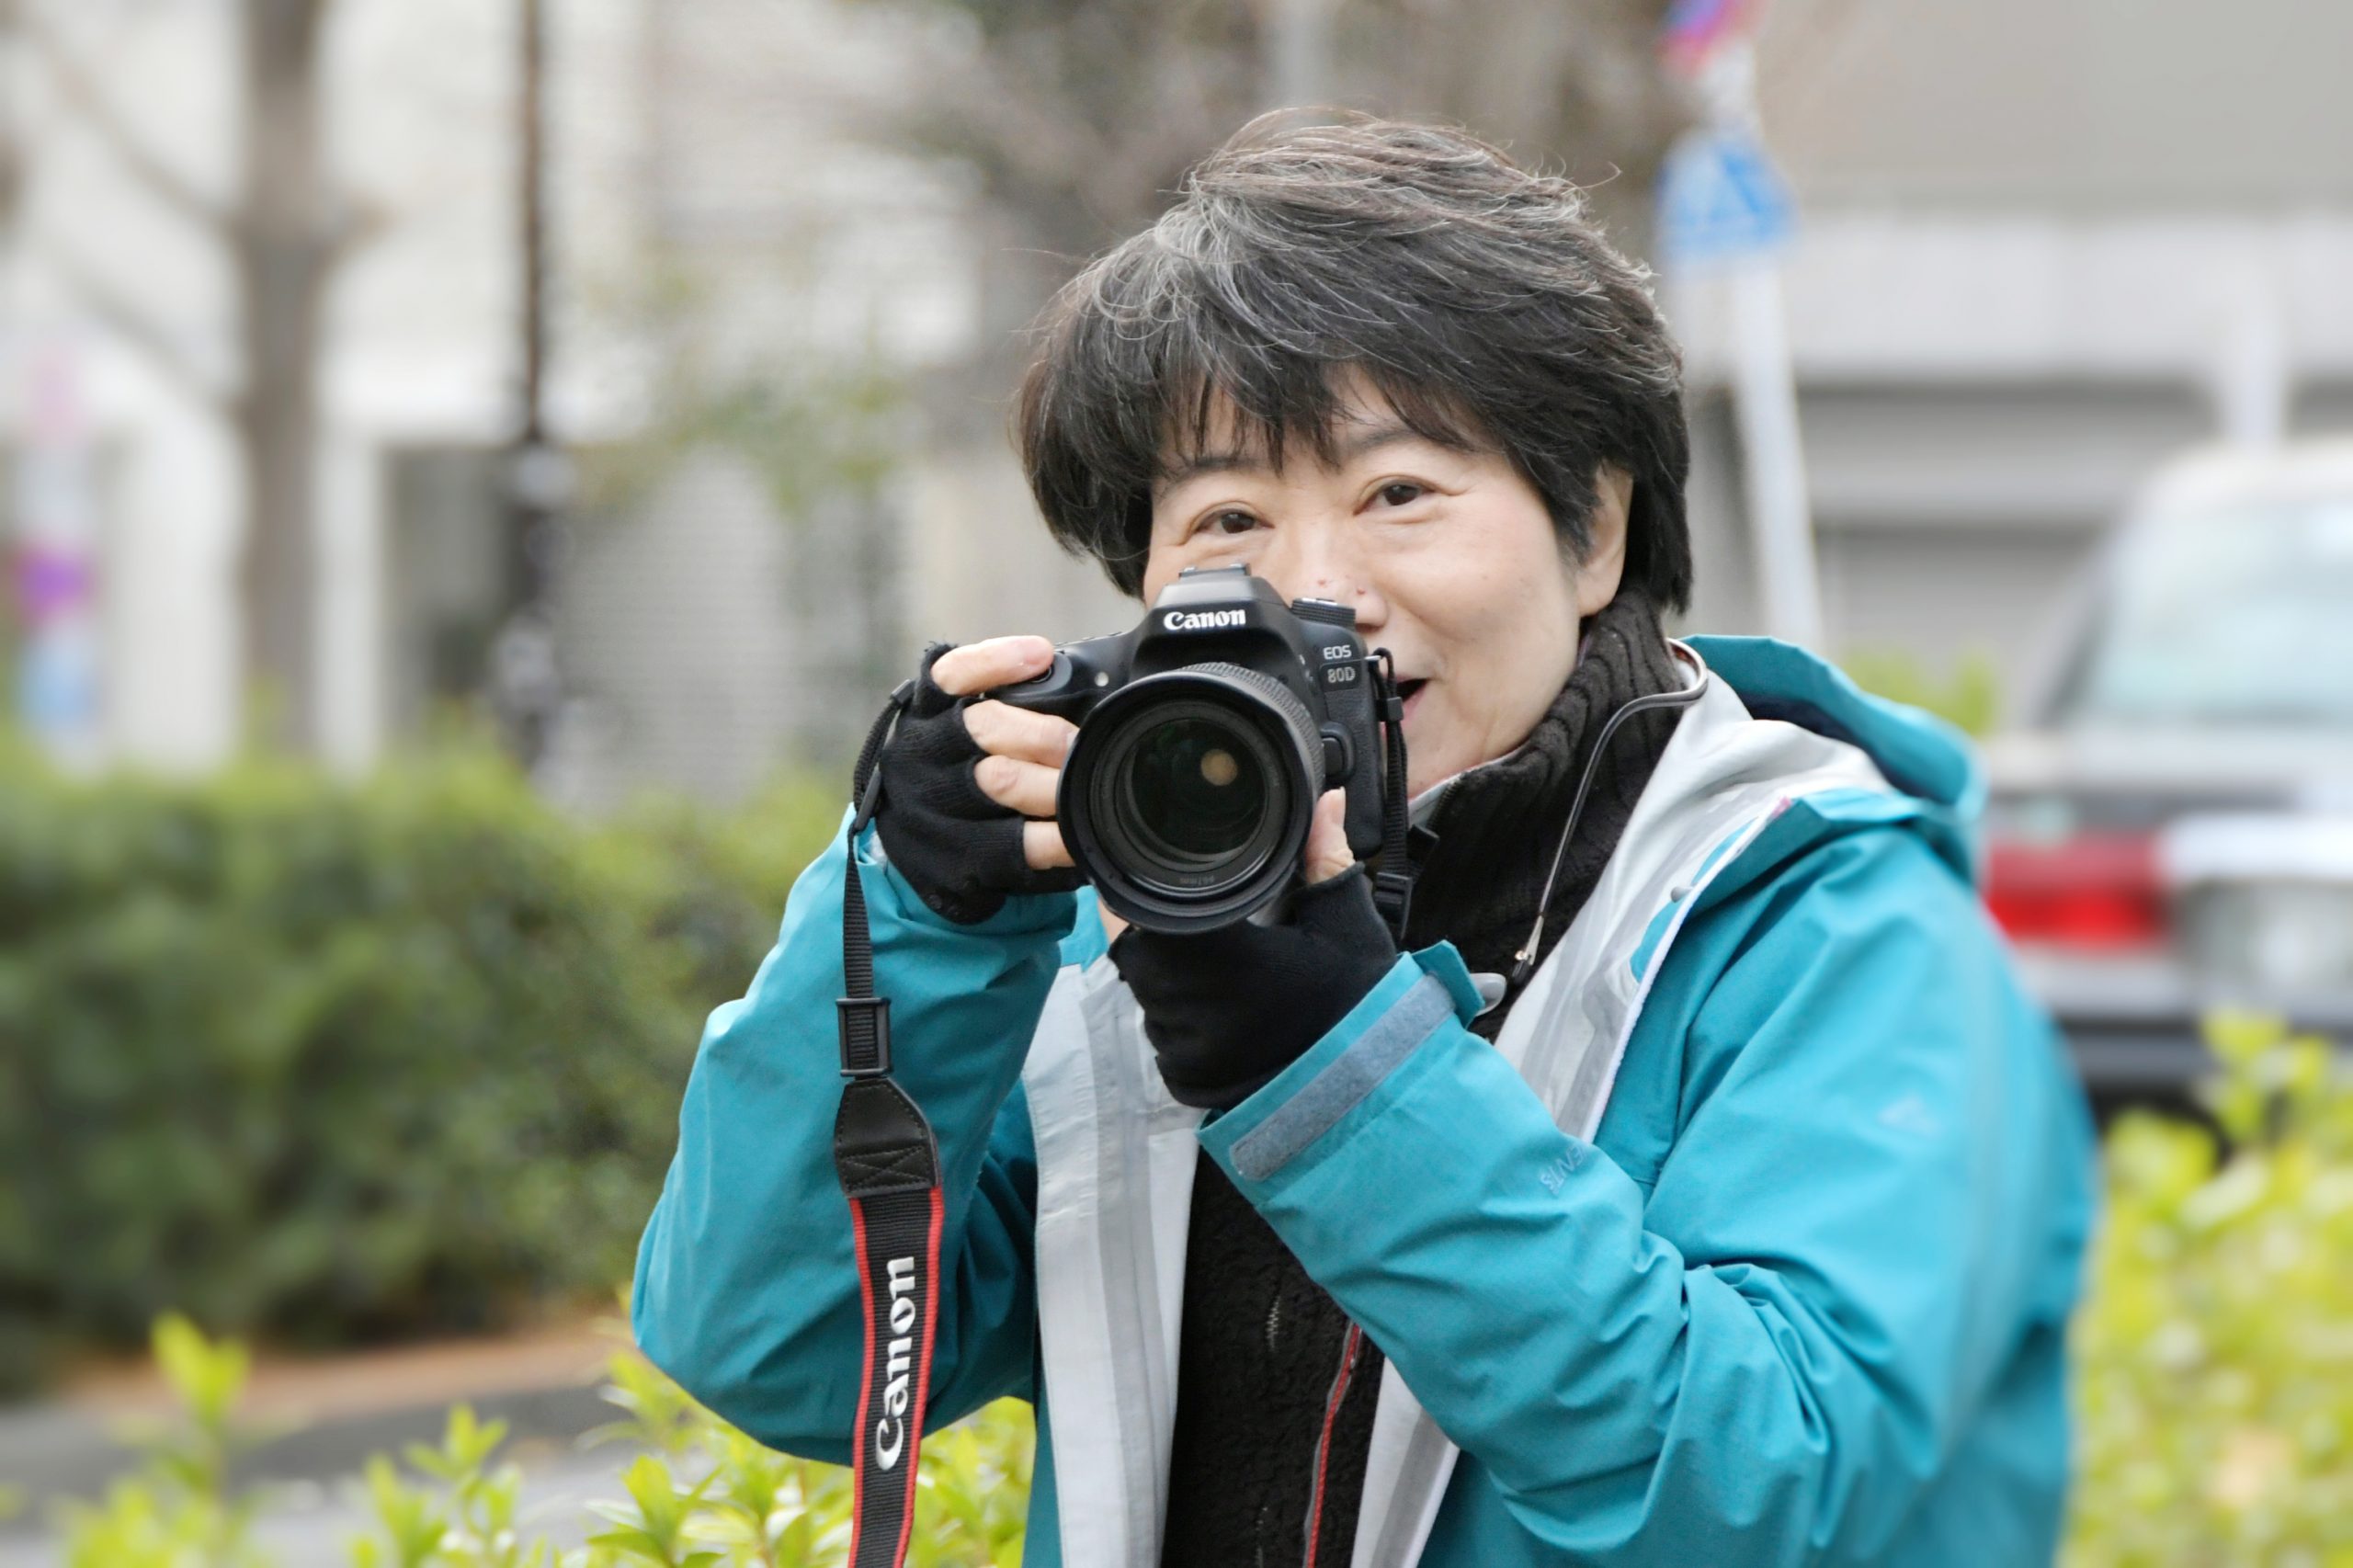 支援者紹介 出会いを大切にしながら 最高の１枚 を届けたい カメラマン 内田雅子さん 六花の会コミュニティ